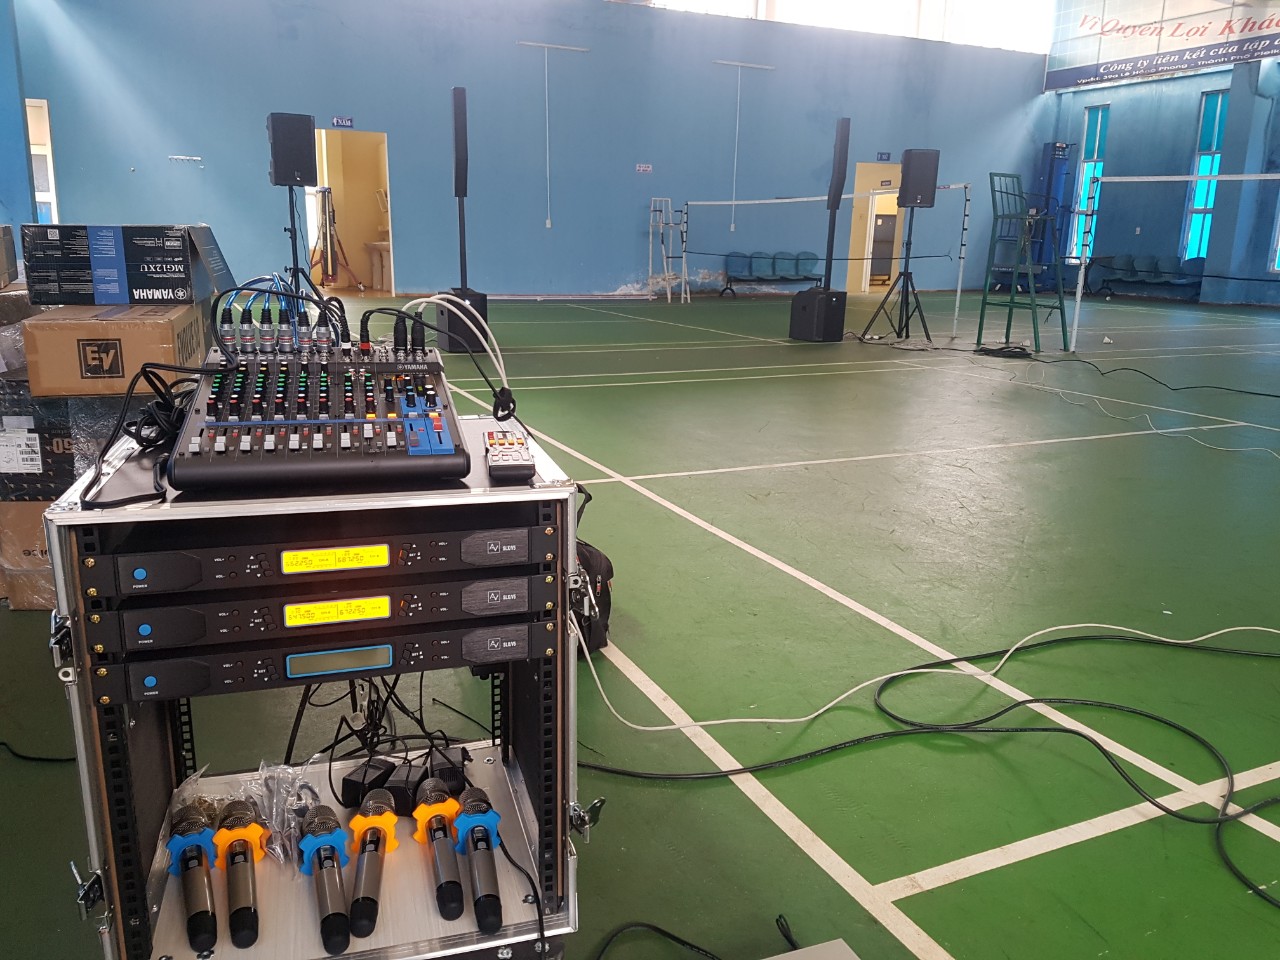 Lắp đặt hệ thống âm thanh hội trường tại công ty thủy điện Yaly